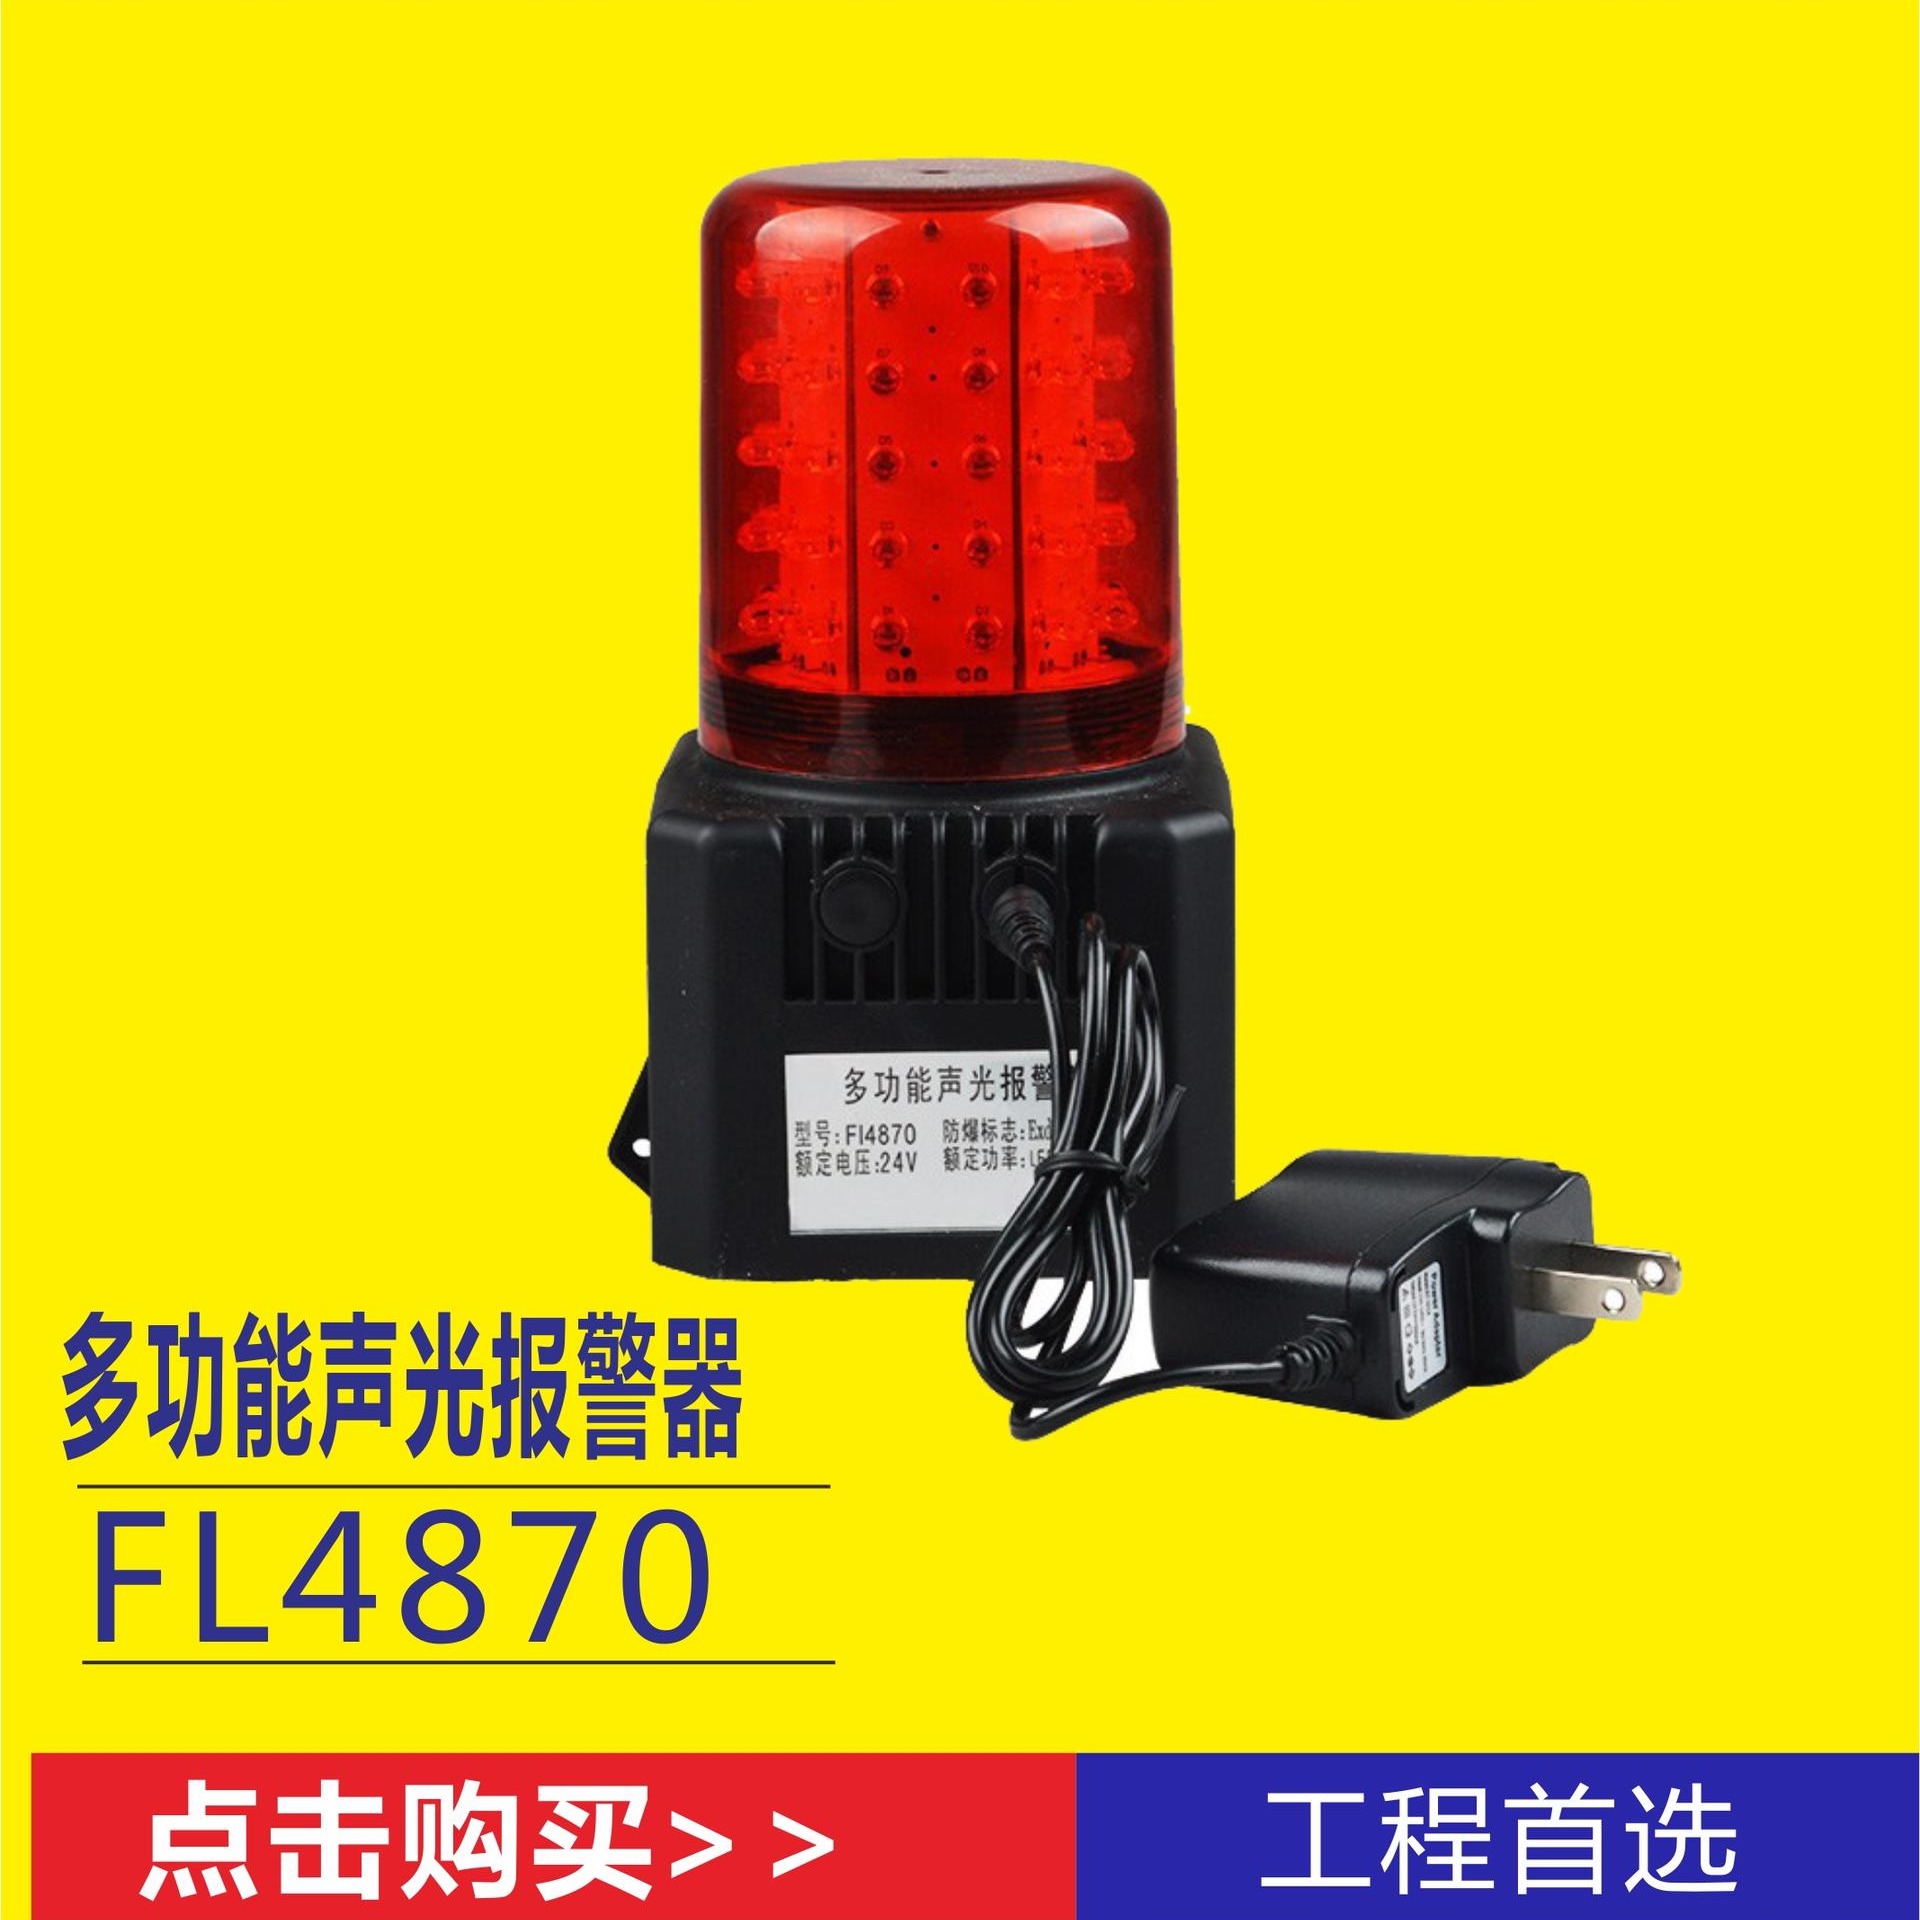 洲创电气BJQ2901多功能声光报警器 监护救护抢险24V警示灯 BZC2901红黄白大分贝信号灯 磁力吸附方位指示灯